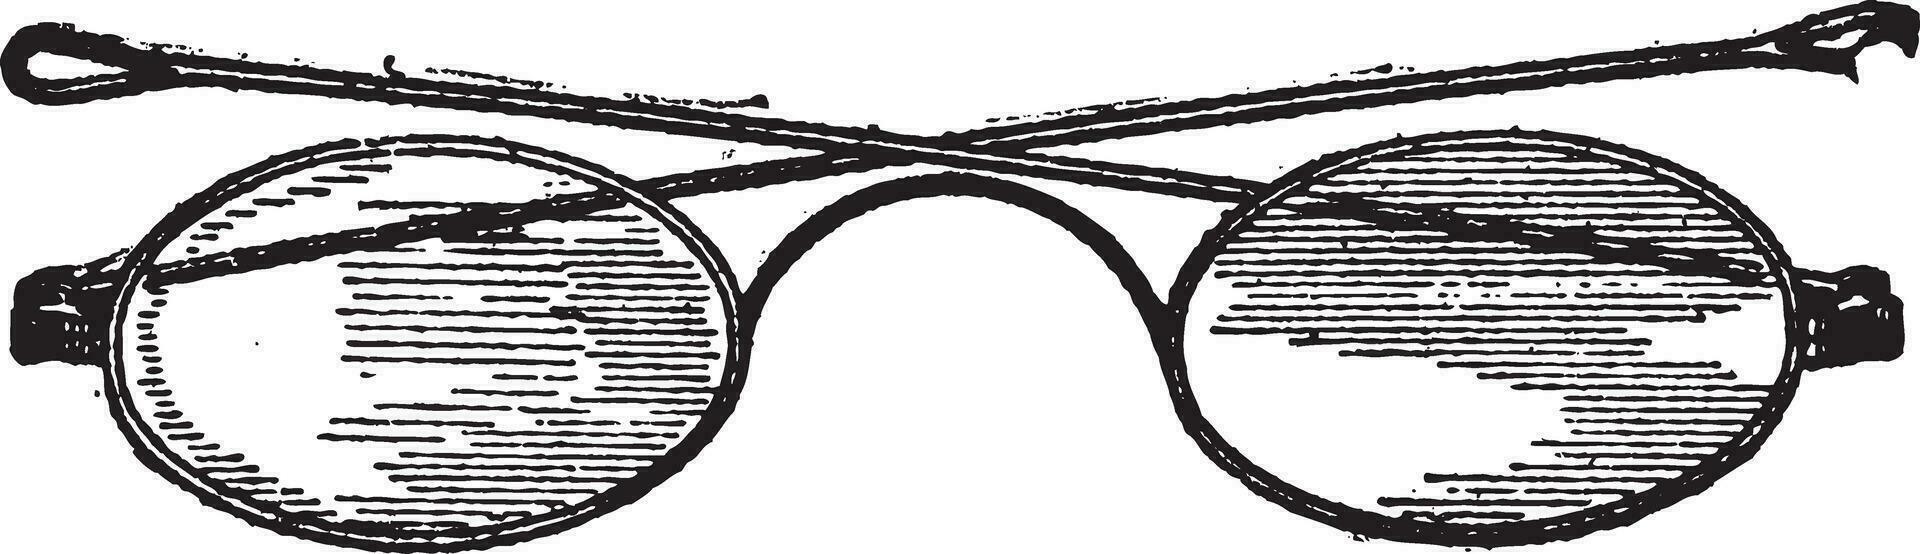 glasögon, c bro, årgång gravyr. vektor